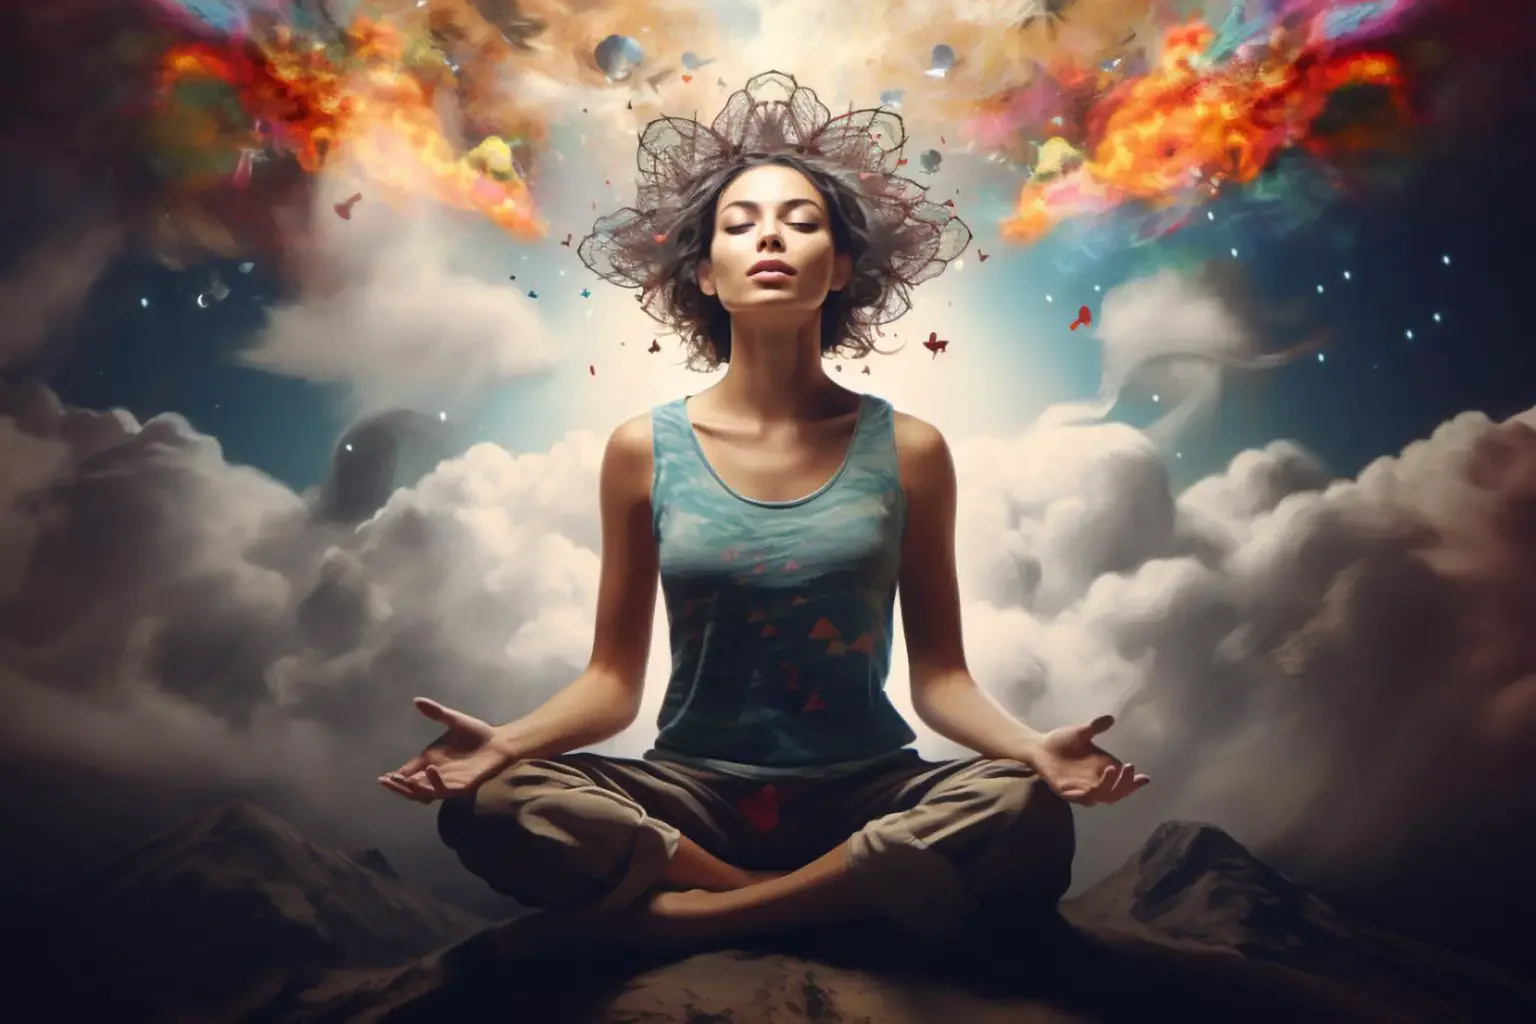 Mindfulness Relaxed Zen Art Concept 1536x1152 1